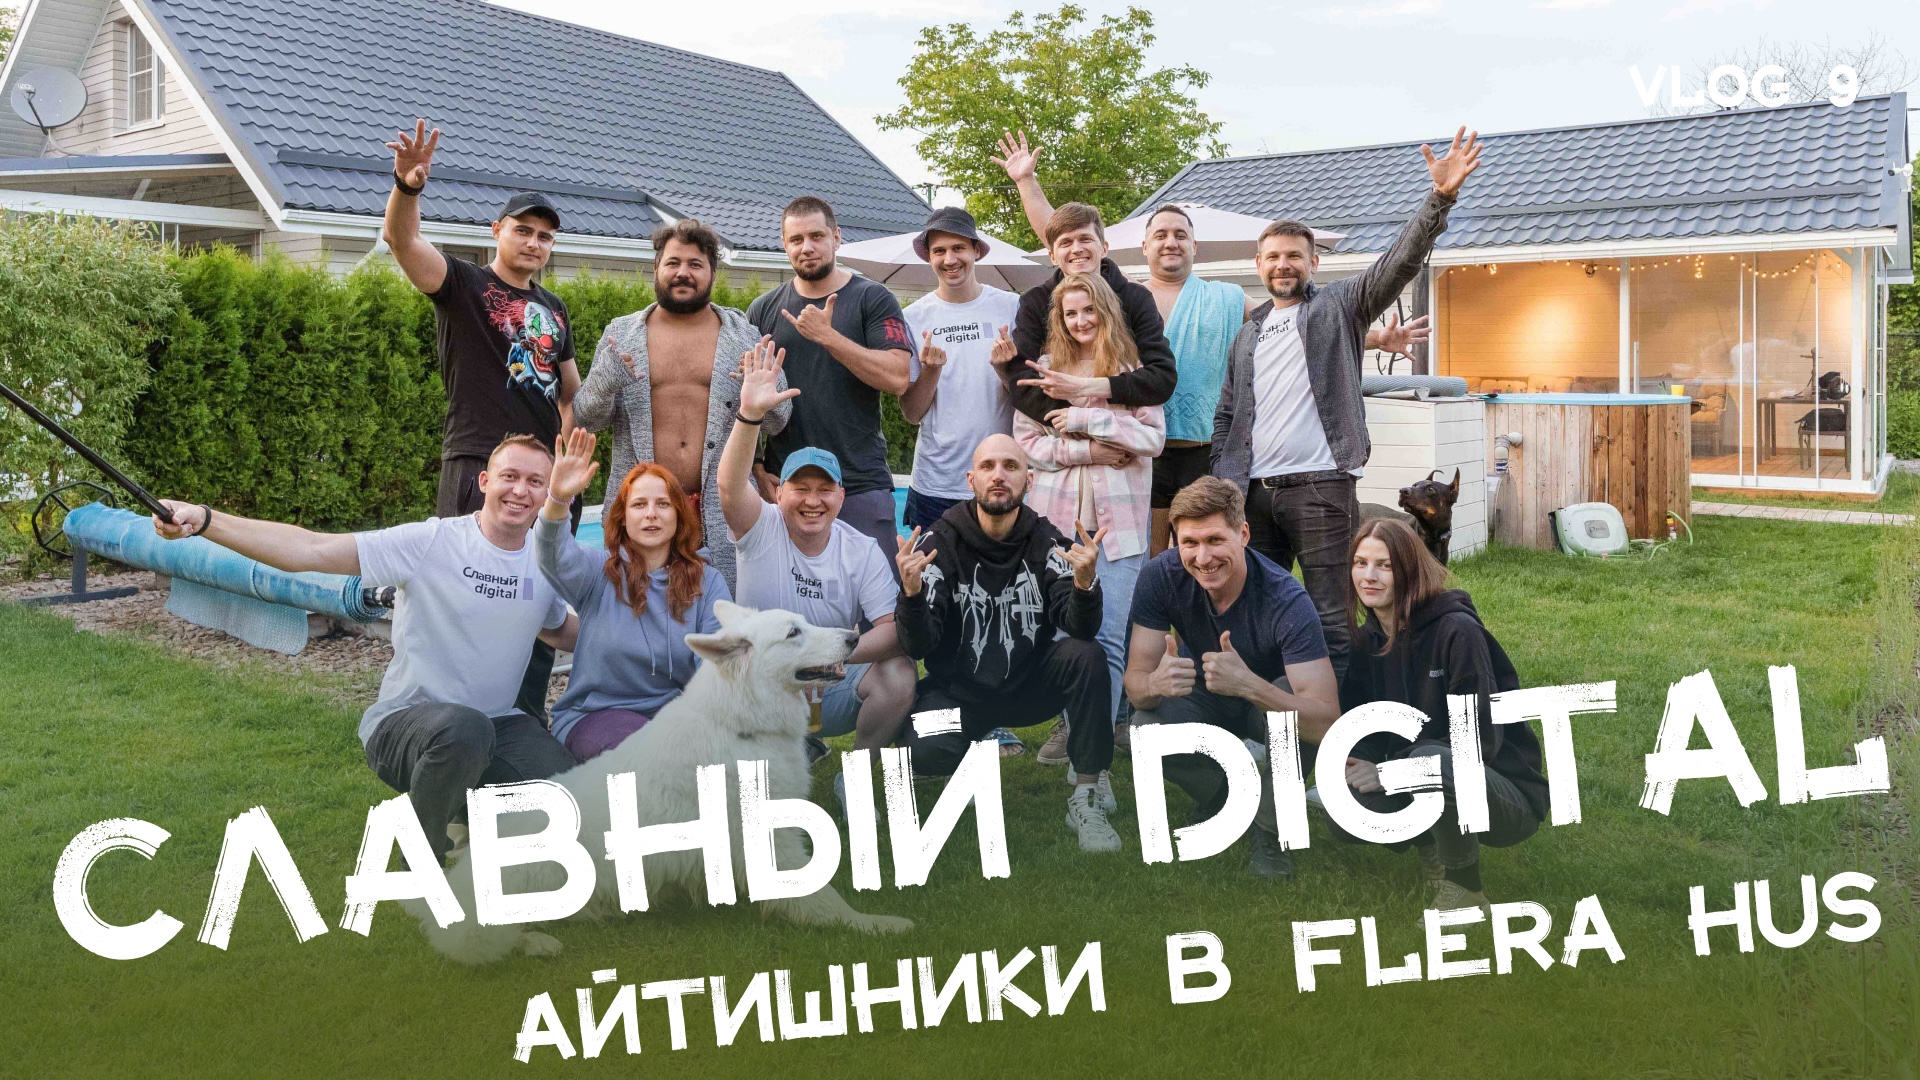 Славный Digital в Краснодаре! (Official Aftermovie)